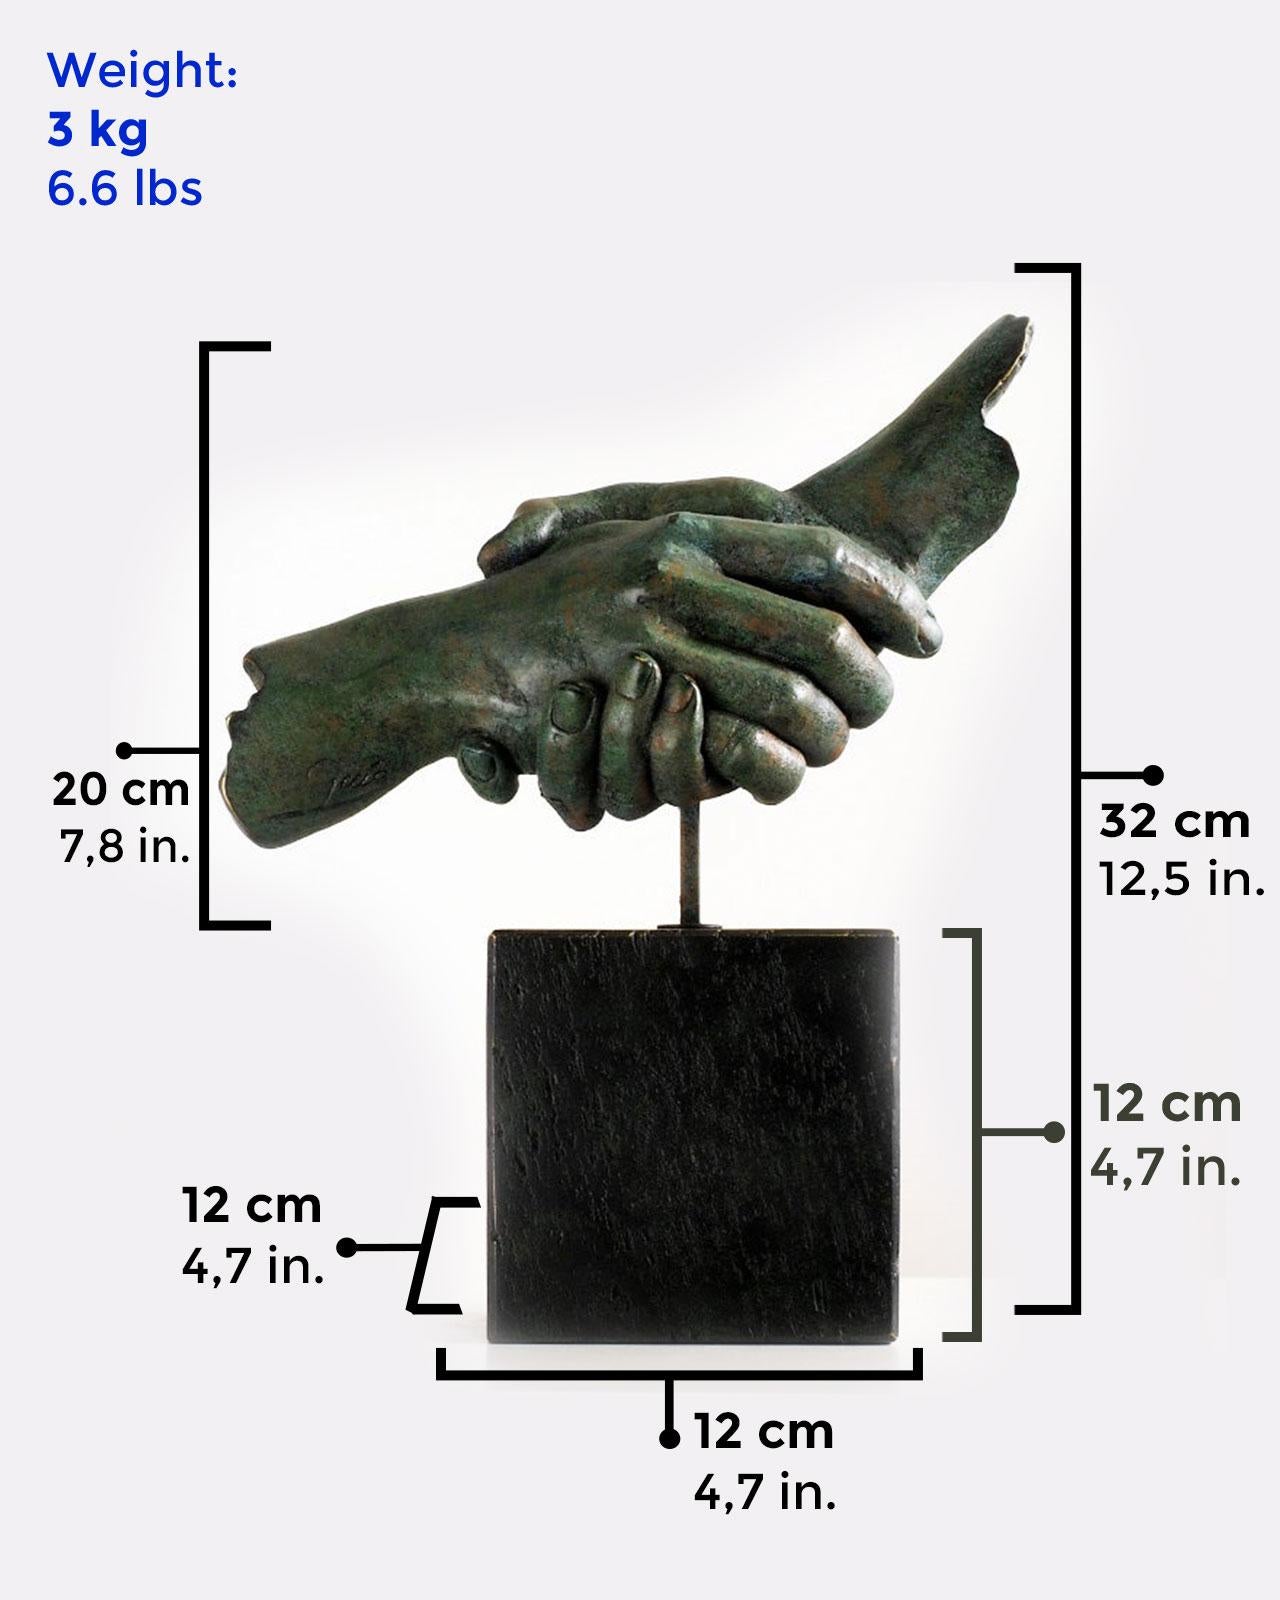 Friendship - Miguel Guía Realism Bronze layer Sculpture 4